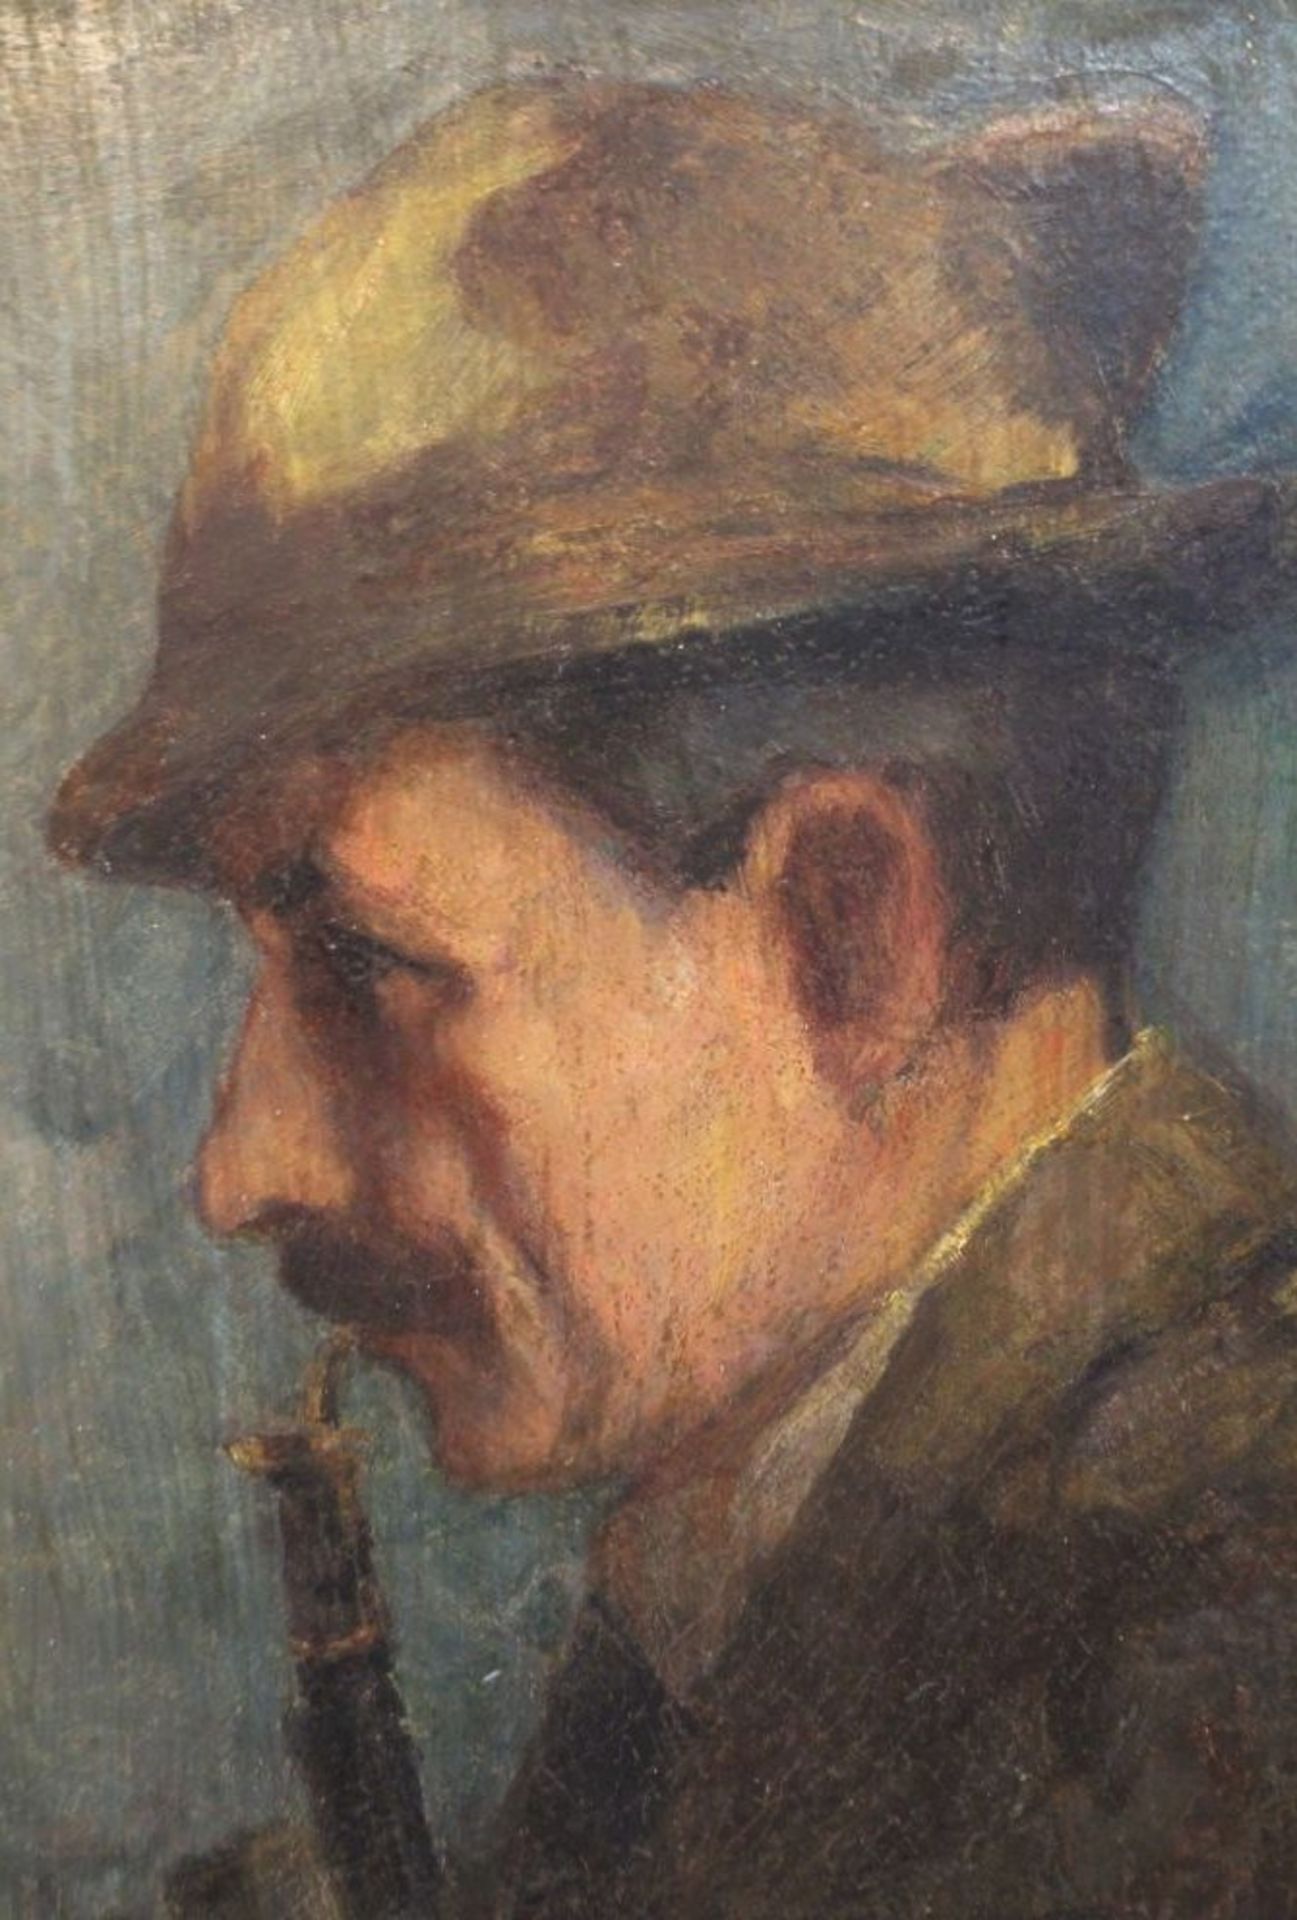 Julius VON KAAN-ALBEST (1874-1942), Pfeifenraucher, Öl/Hartfaser, verso signiert, gerahmt, RG 53 x